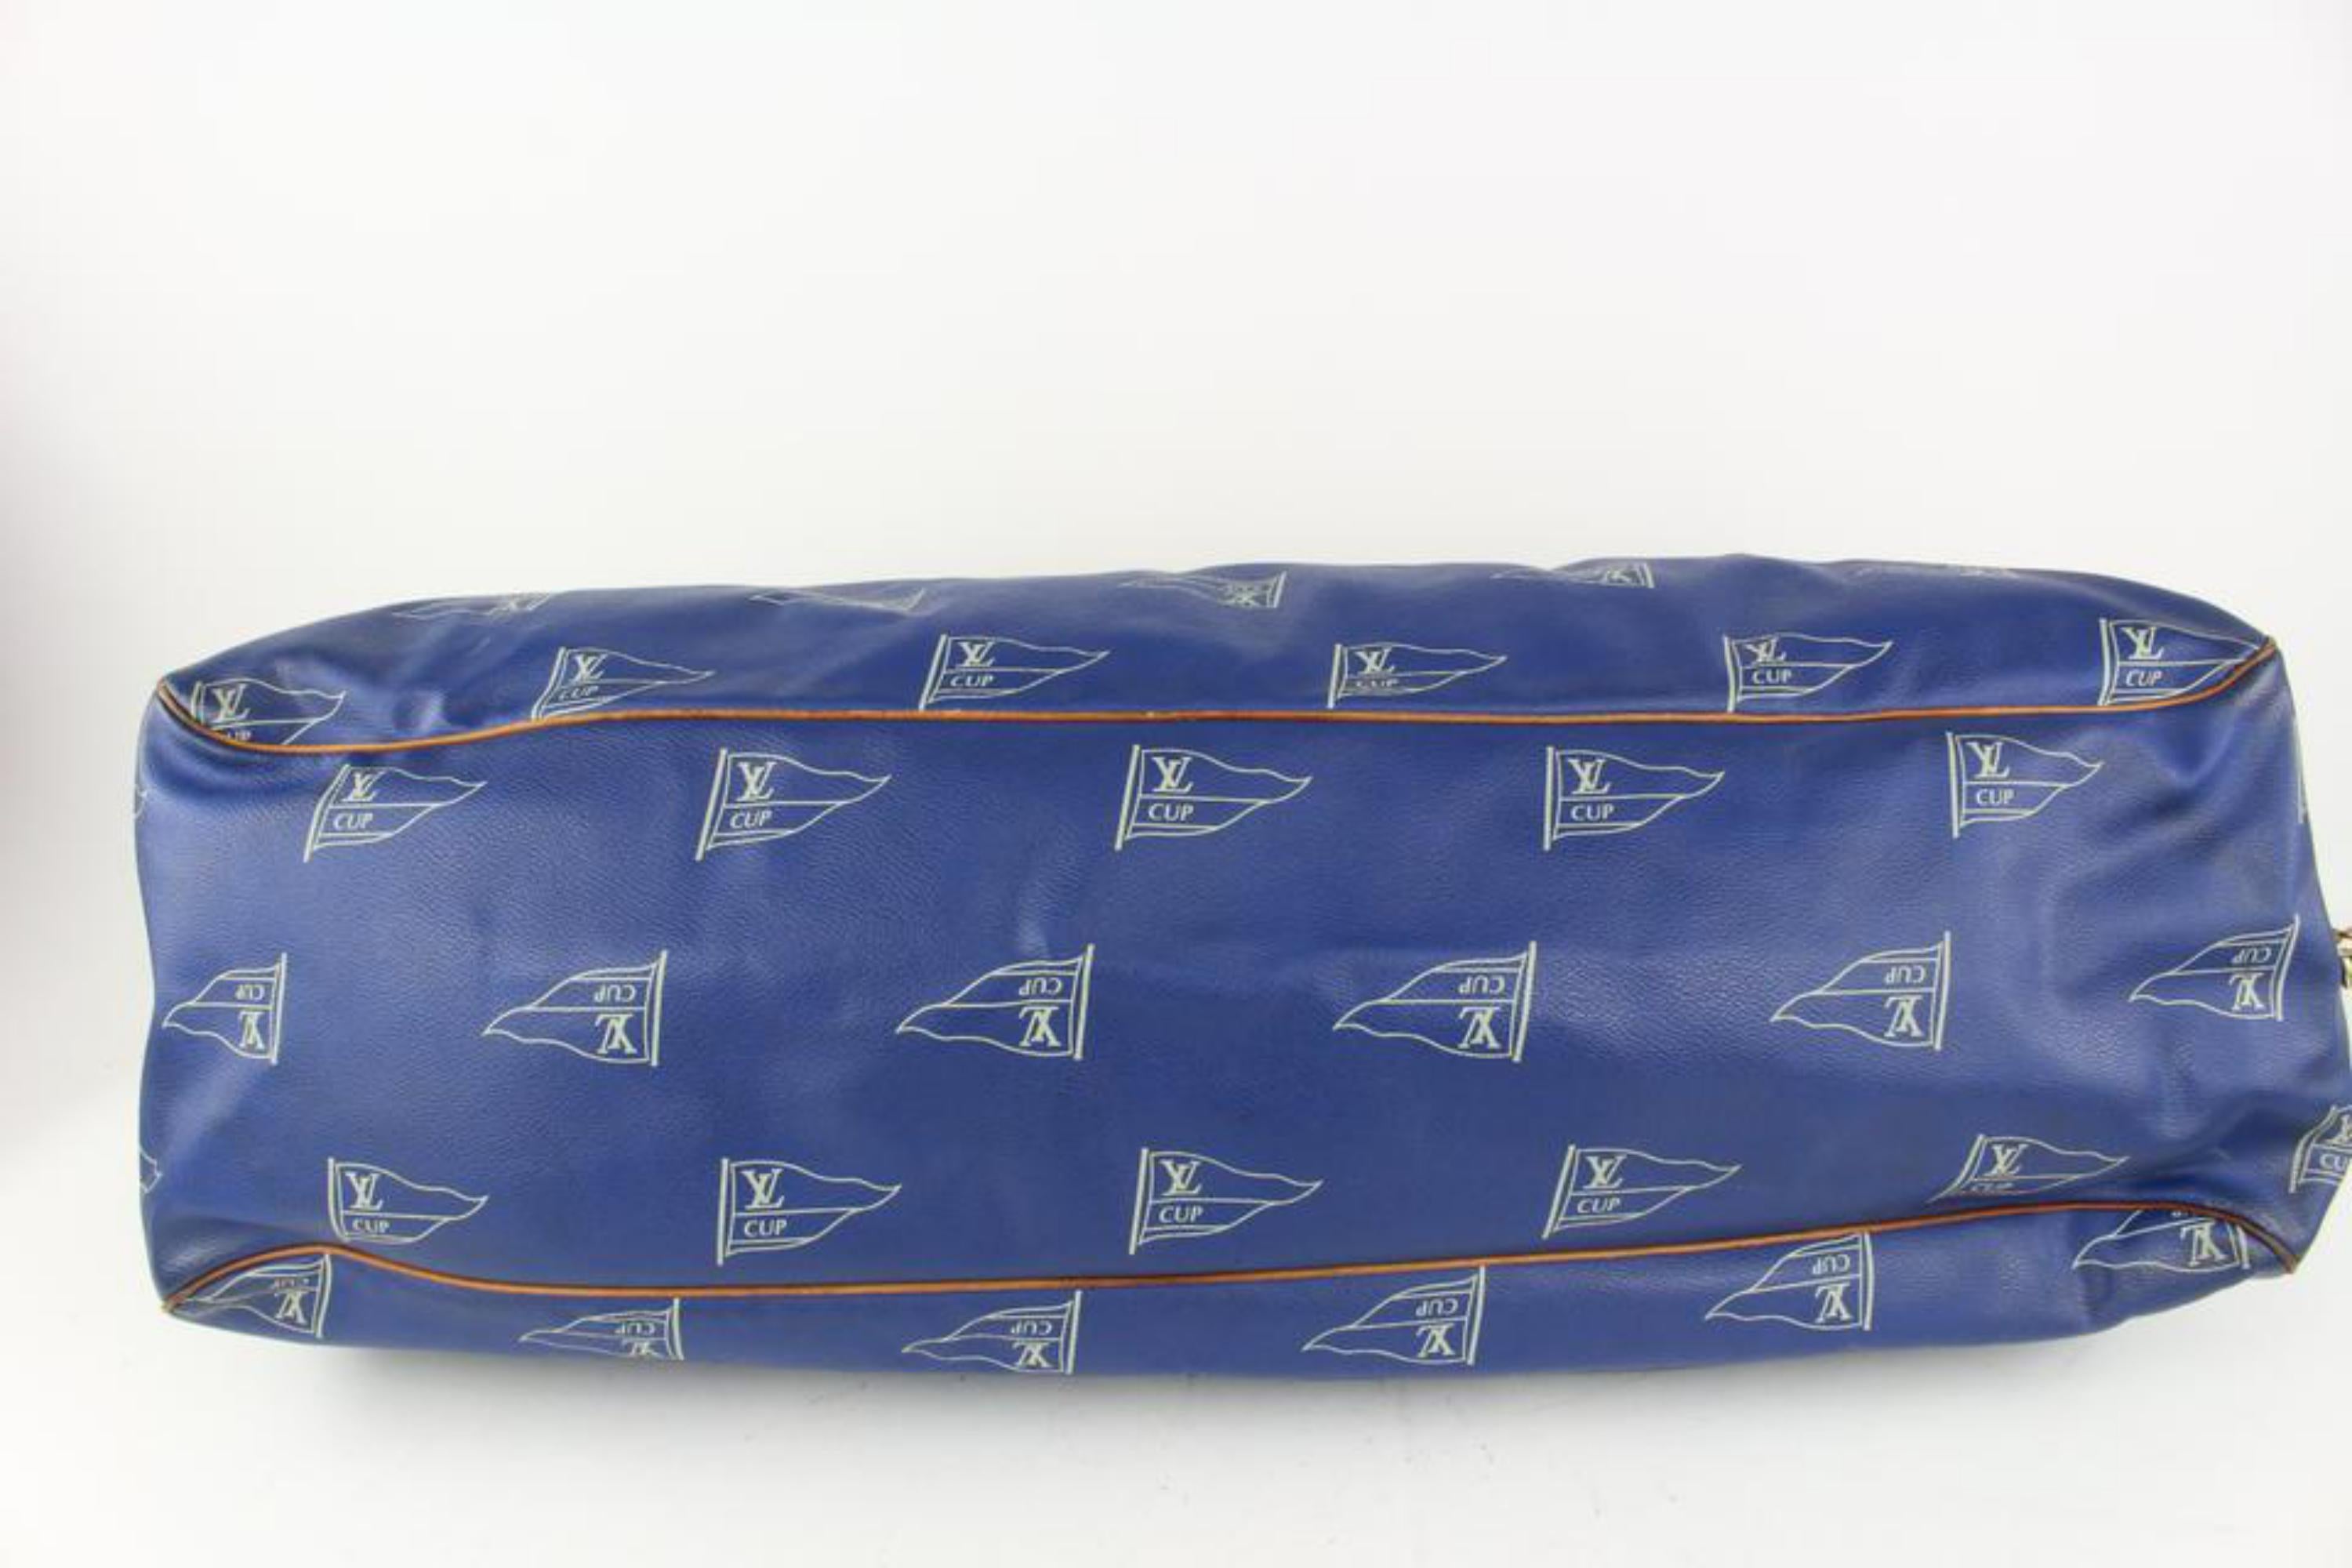 Bleu Sac à main Louis Vuitton bleu LV Cup Sac Plein Air Long Keepall 1015lv43 en vente